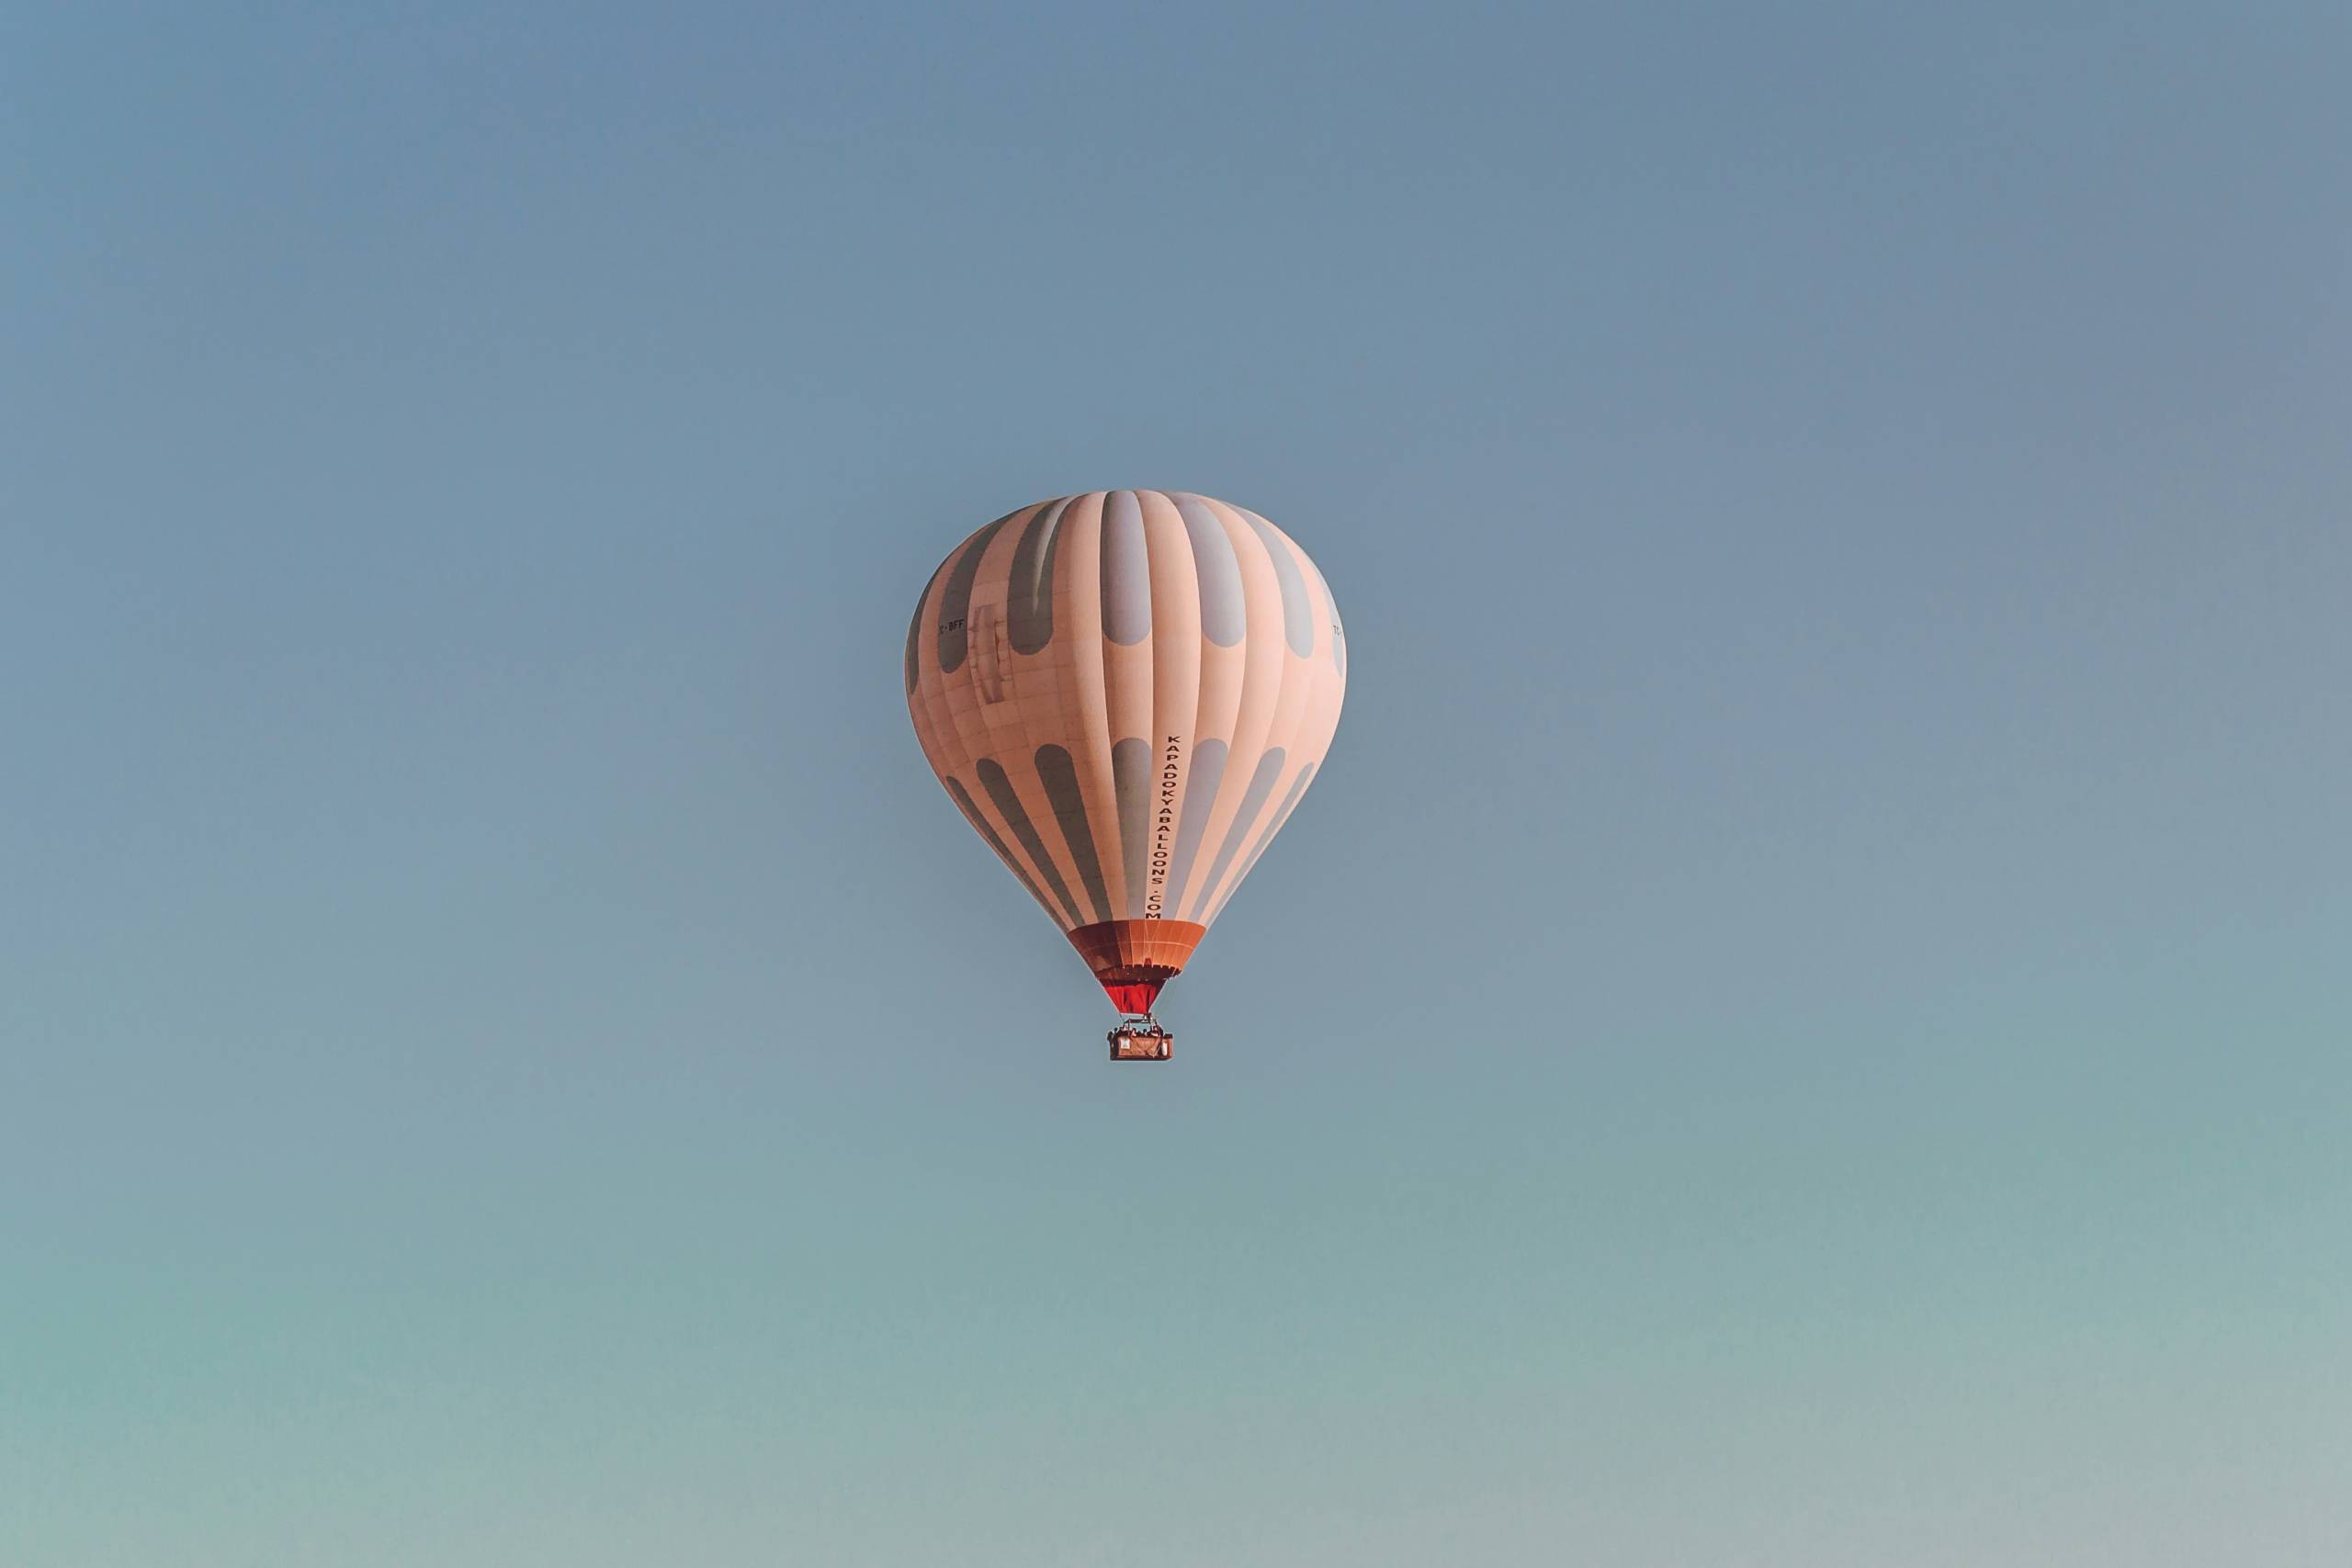 Apricot farbener Heißluftballon schwebt in einem blauen Himmel.